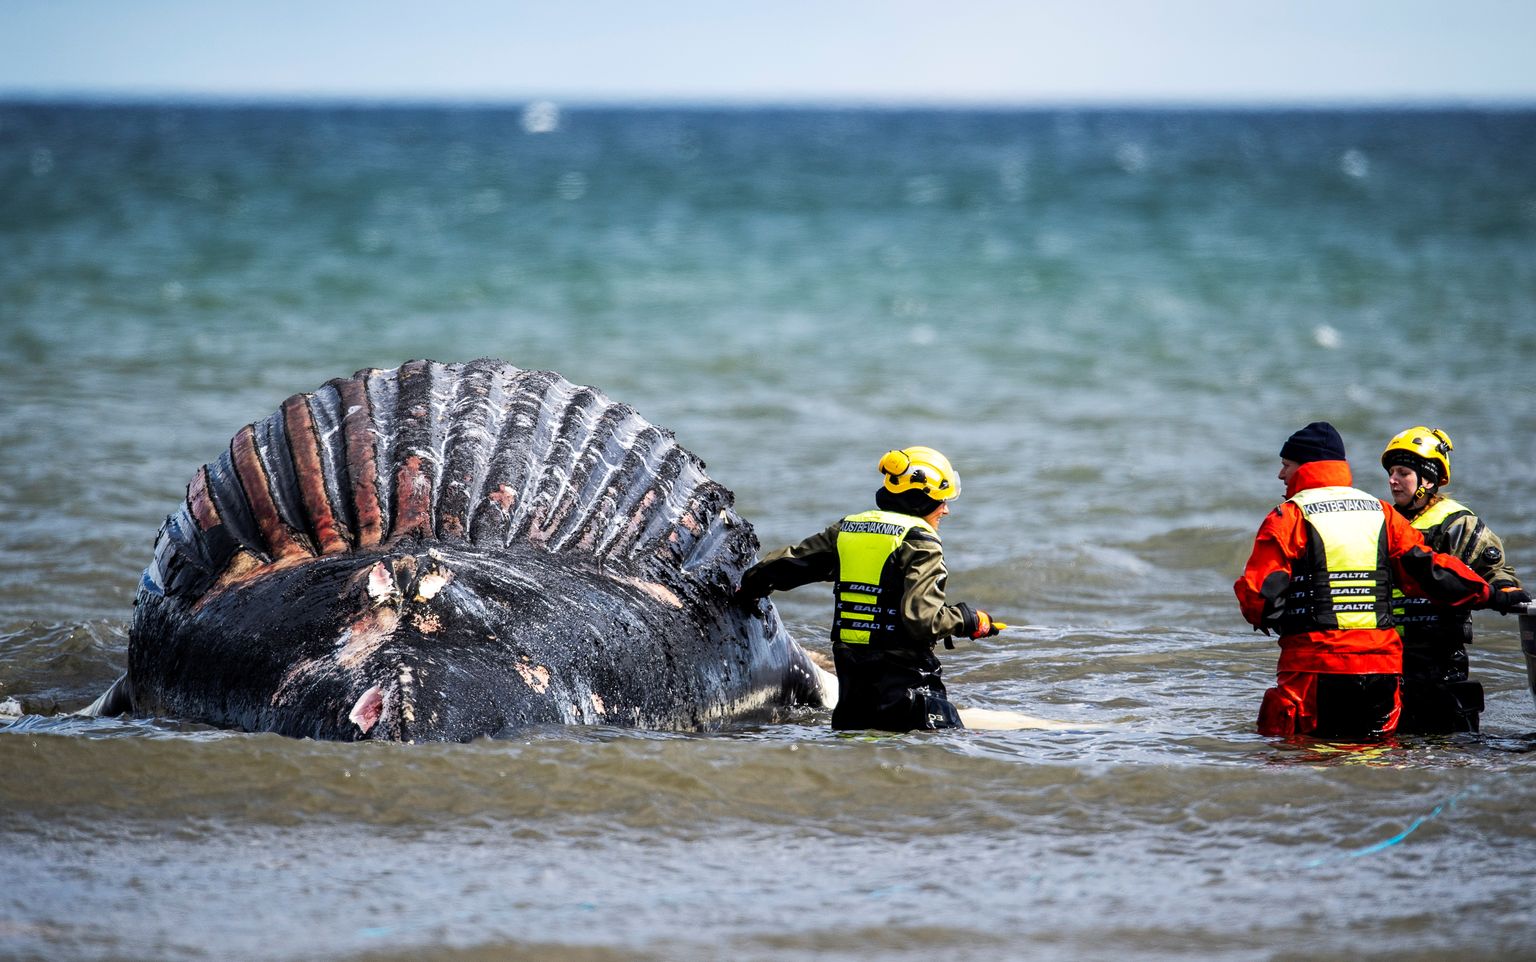 Rootsi teadlased võtsid proove ja uurivad Ölandi saare rannavees olevat surnud küürvaala